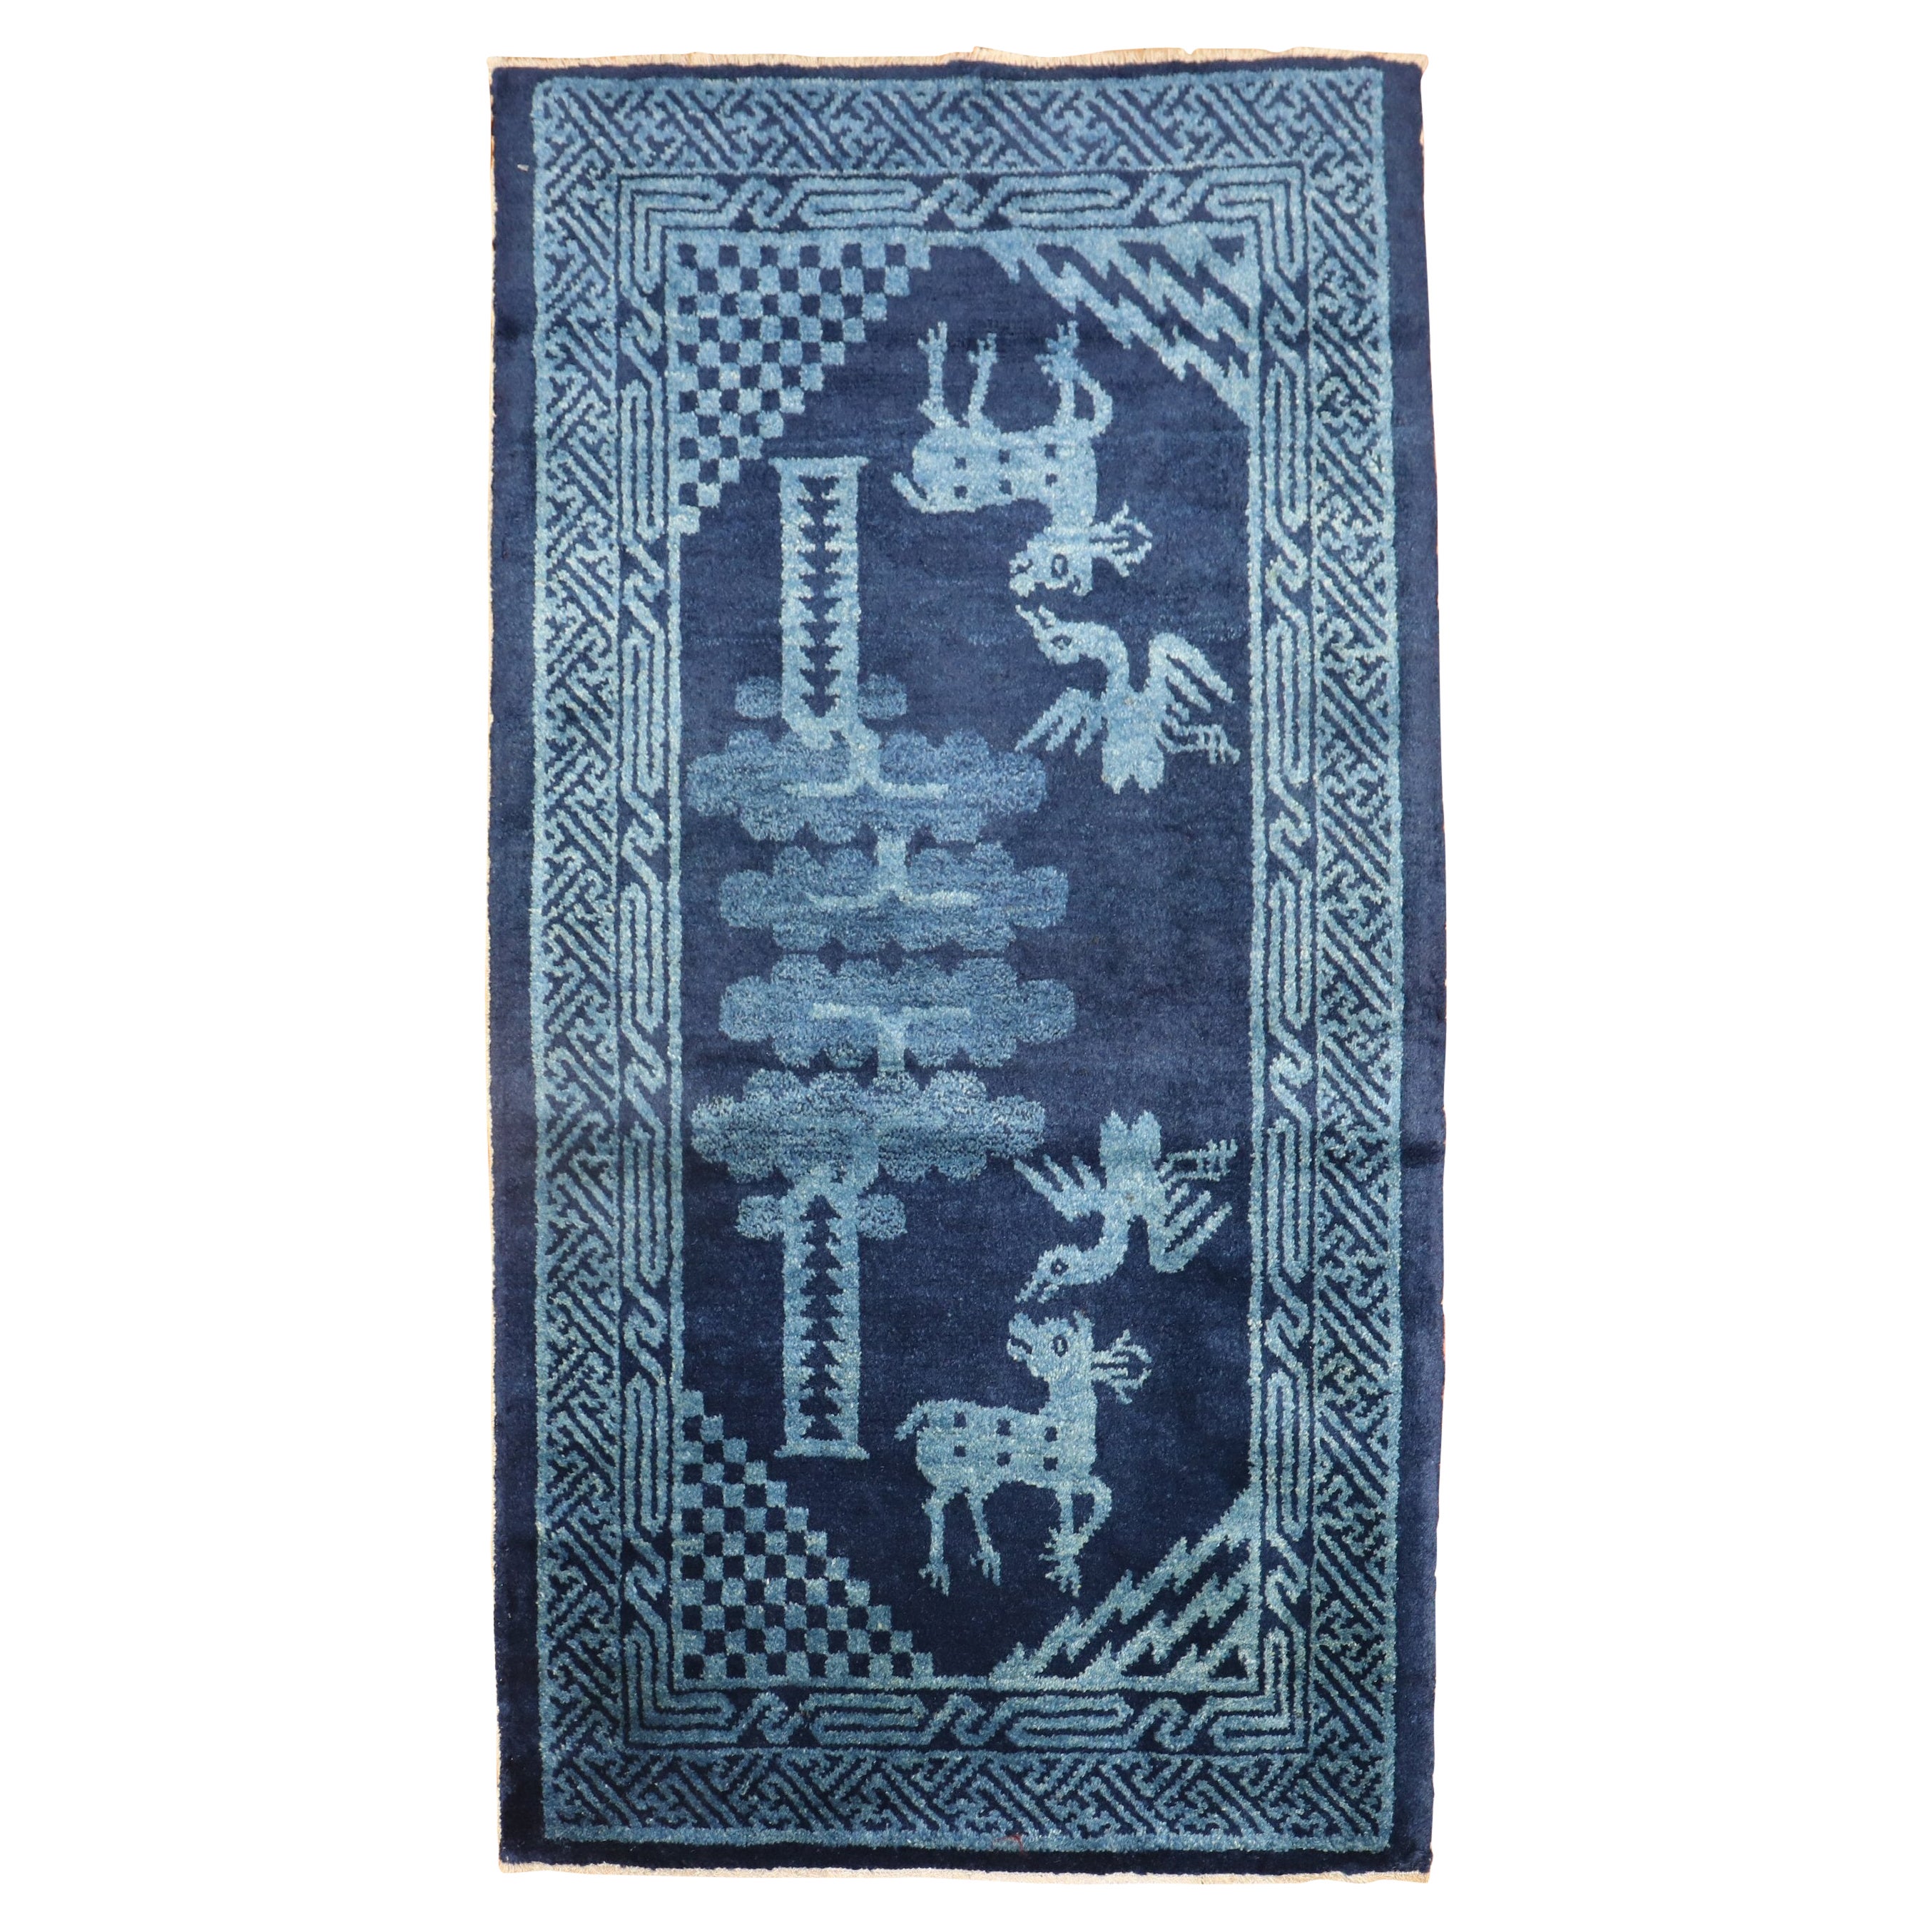 Chinese Peking Animal Pictorial Carpet